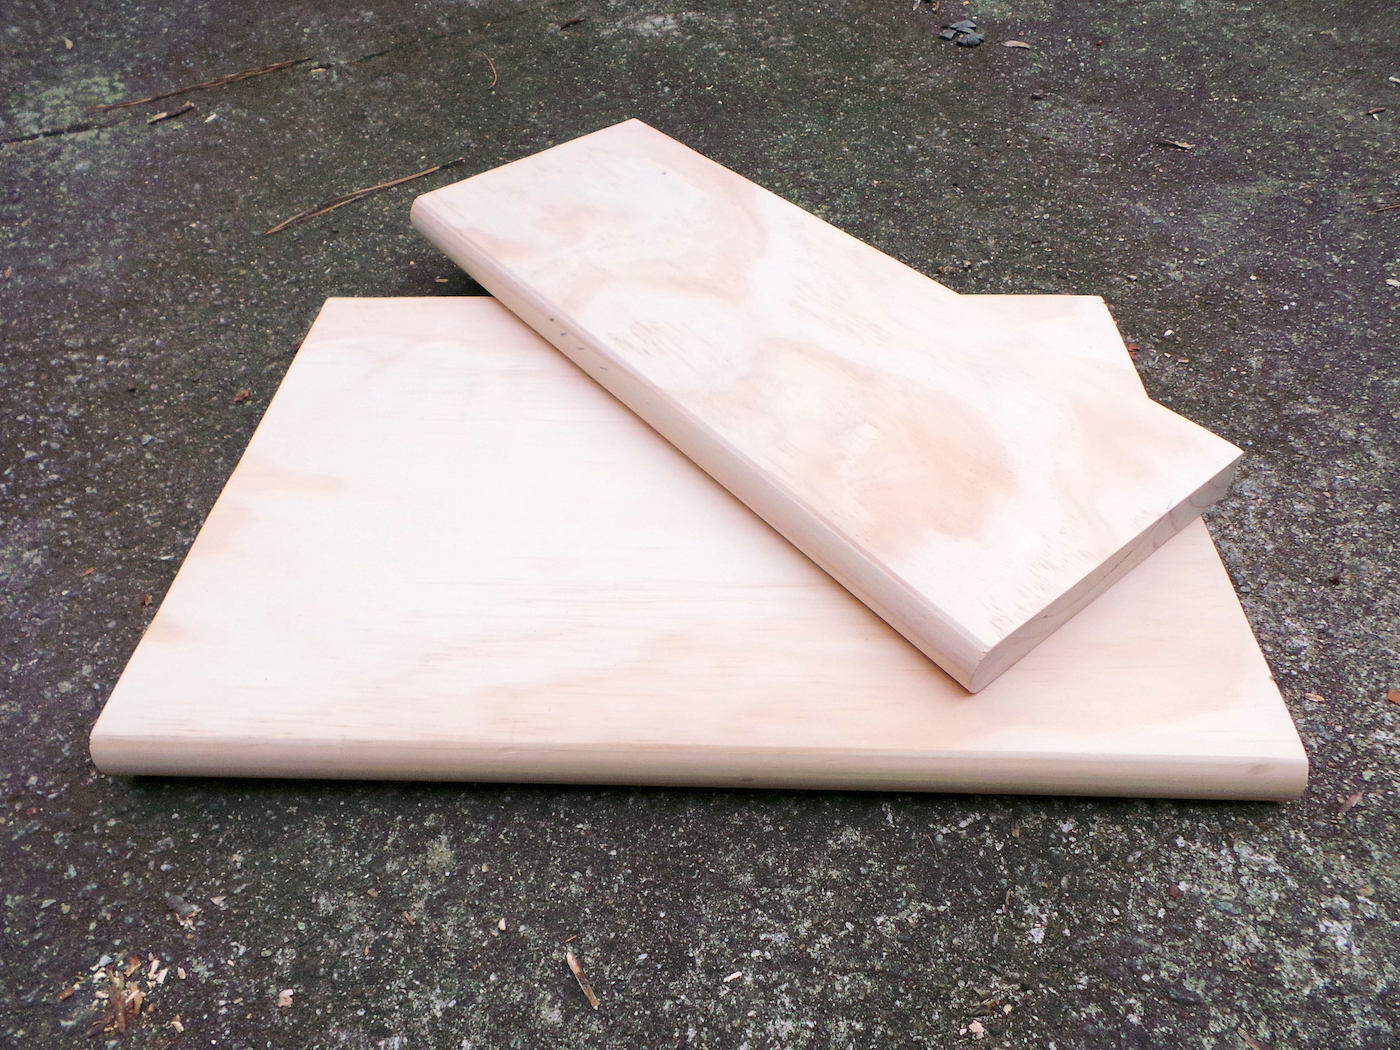 Corta dos piezas de peldaño de escalera interior con una sierra de mesa.